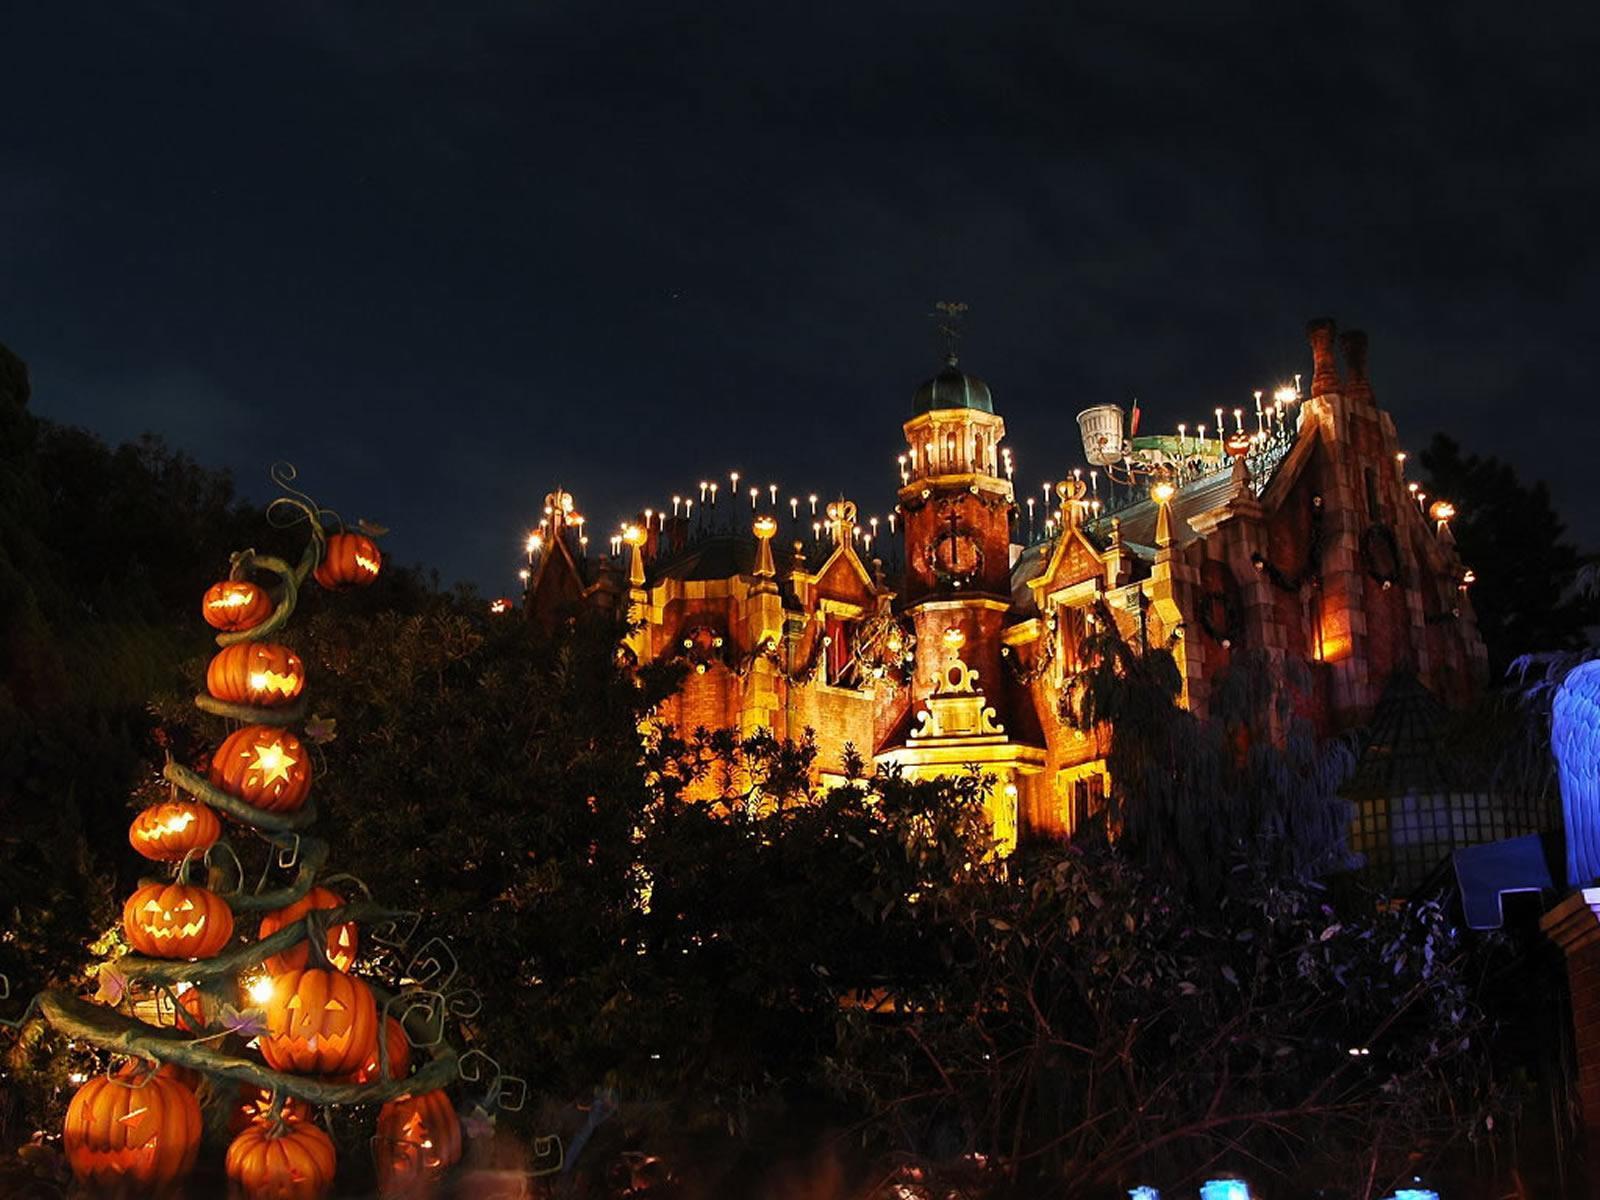 Halloween Haunted Mansion HD desktop wallpapers : Widescreen : High Definition : Fullscreen